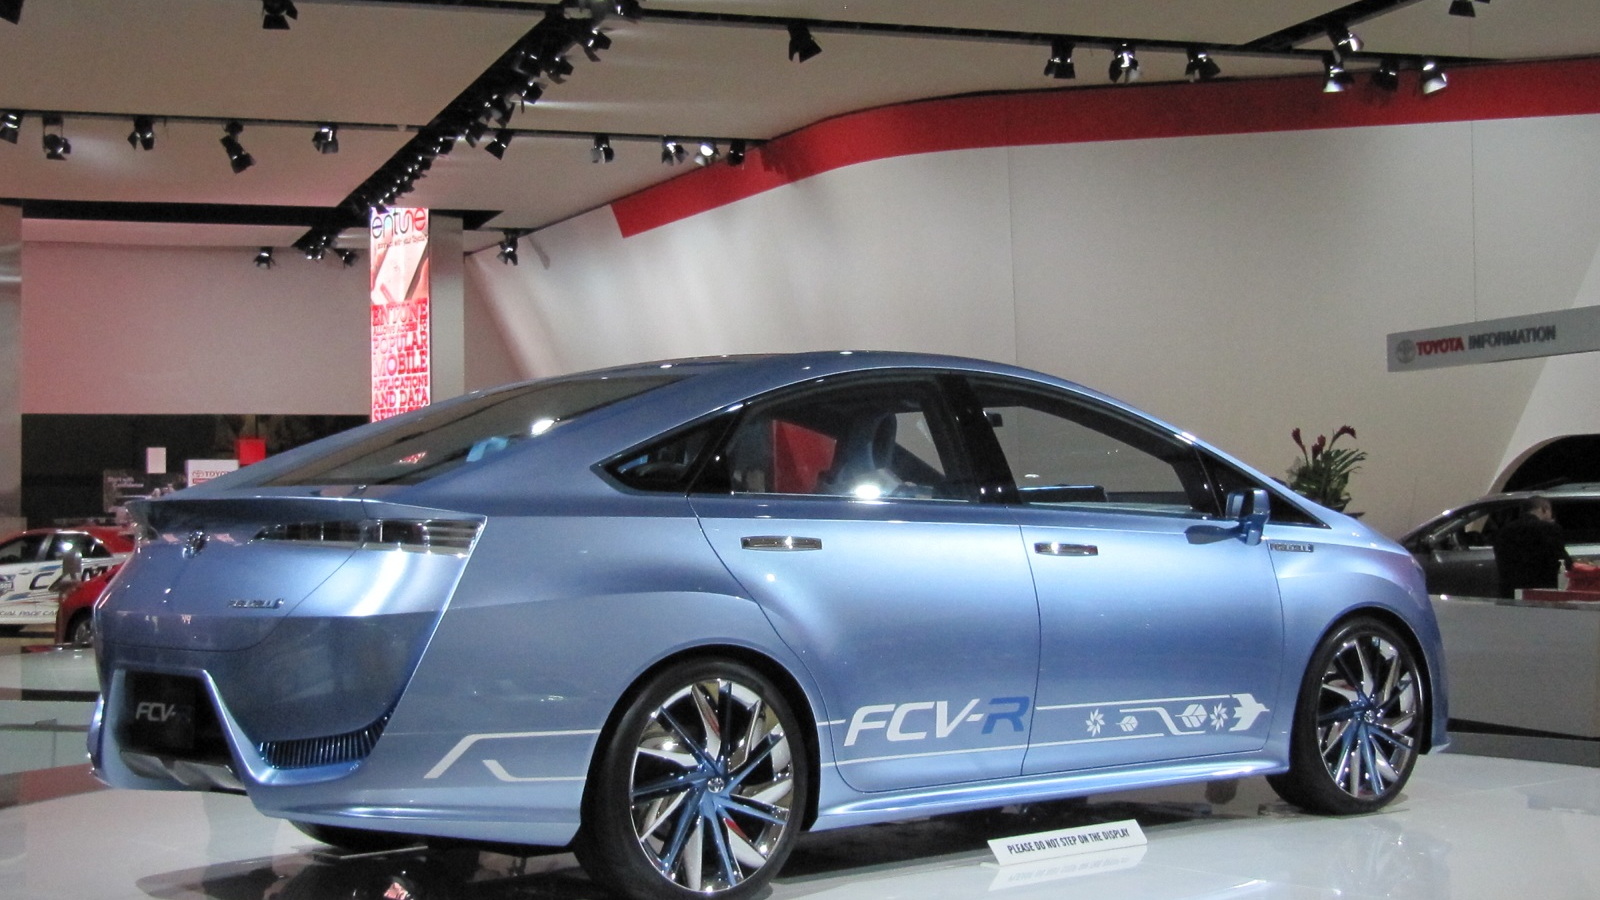 Toyota FCV-R hydrogen fuel-cell concept car, 2012 Detroit Auto Show